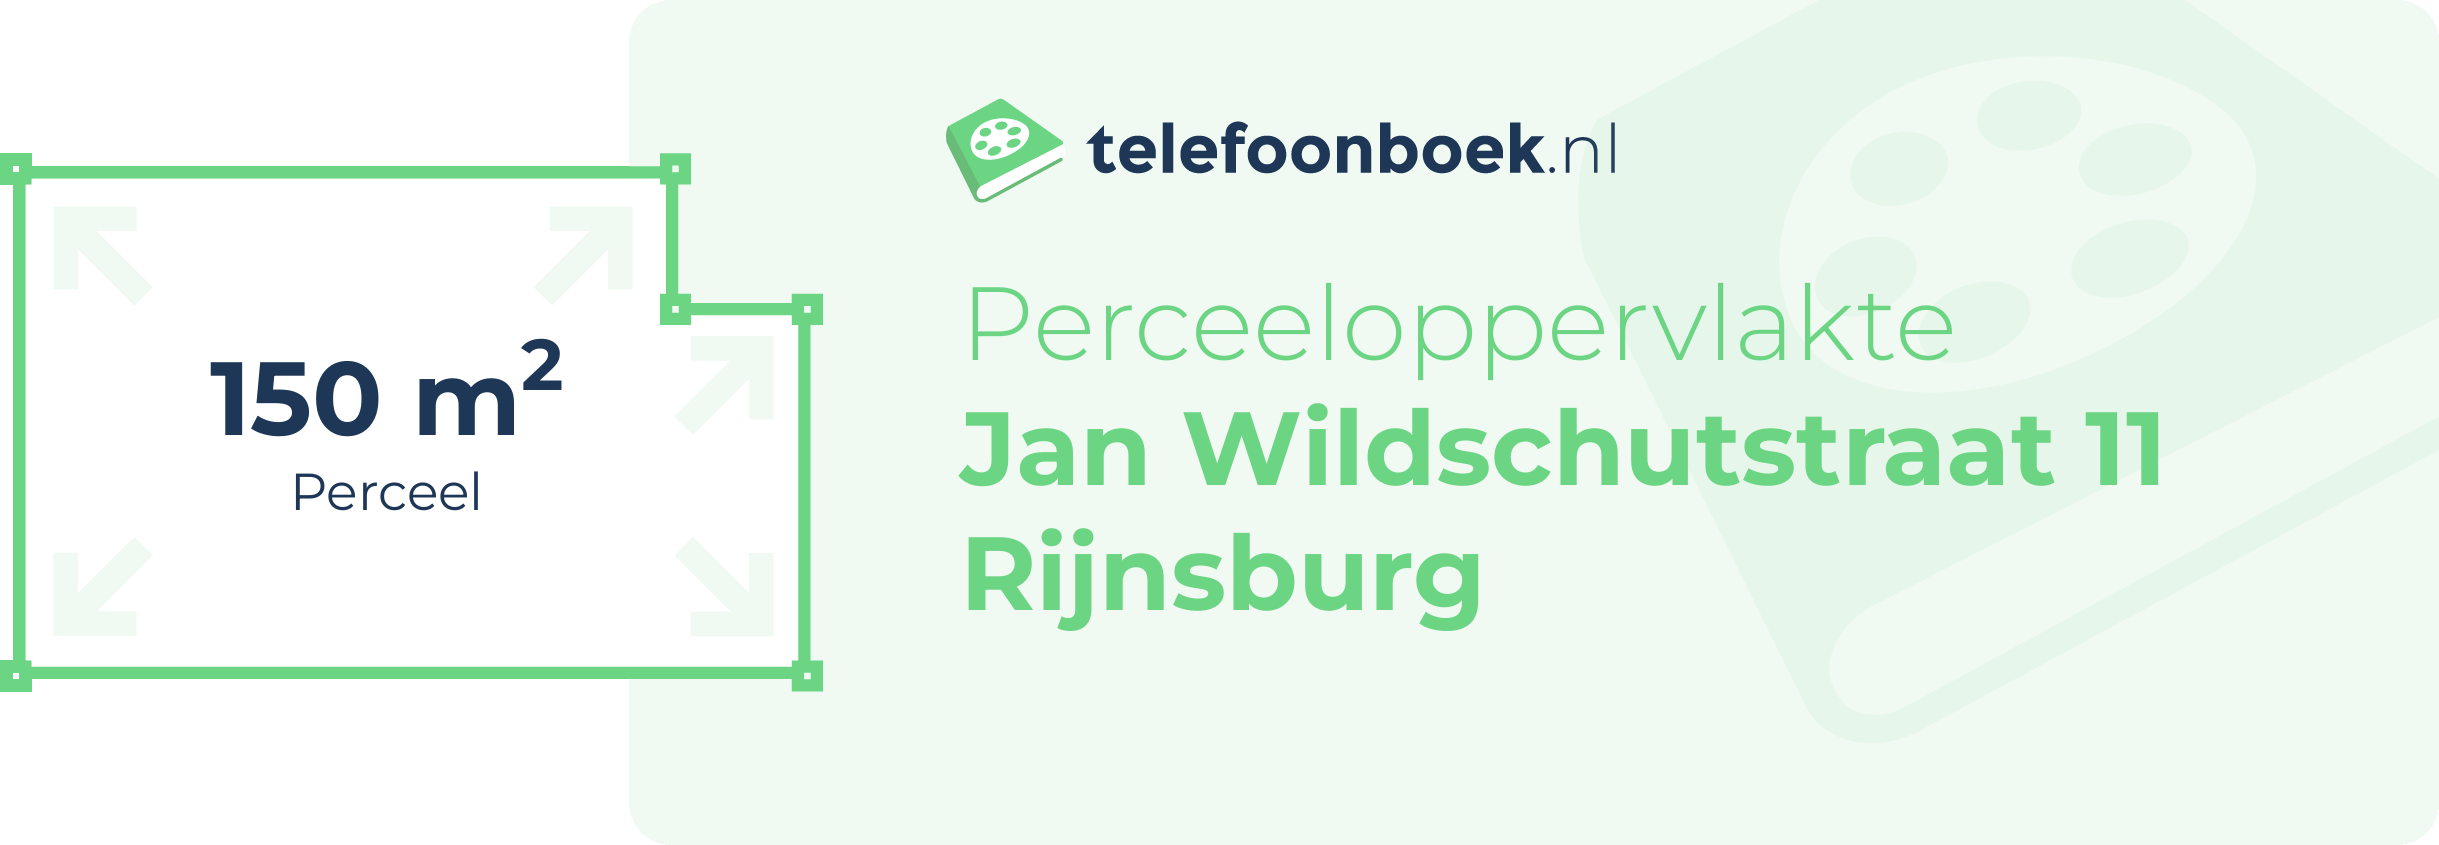 Perceeloppervlakte Jan Wildschutstraat 11 Rijnsburg